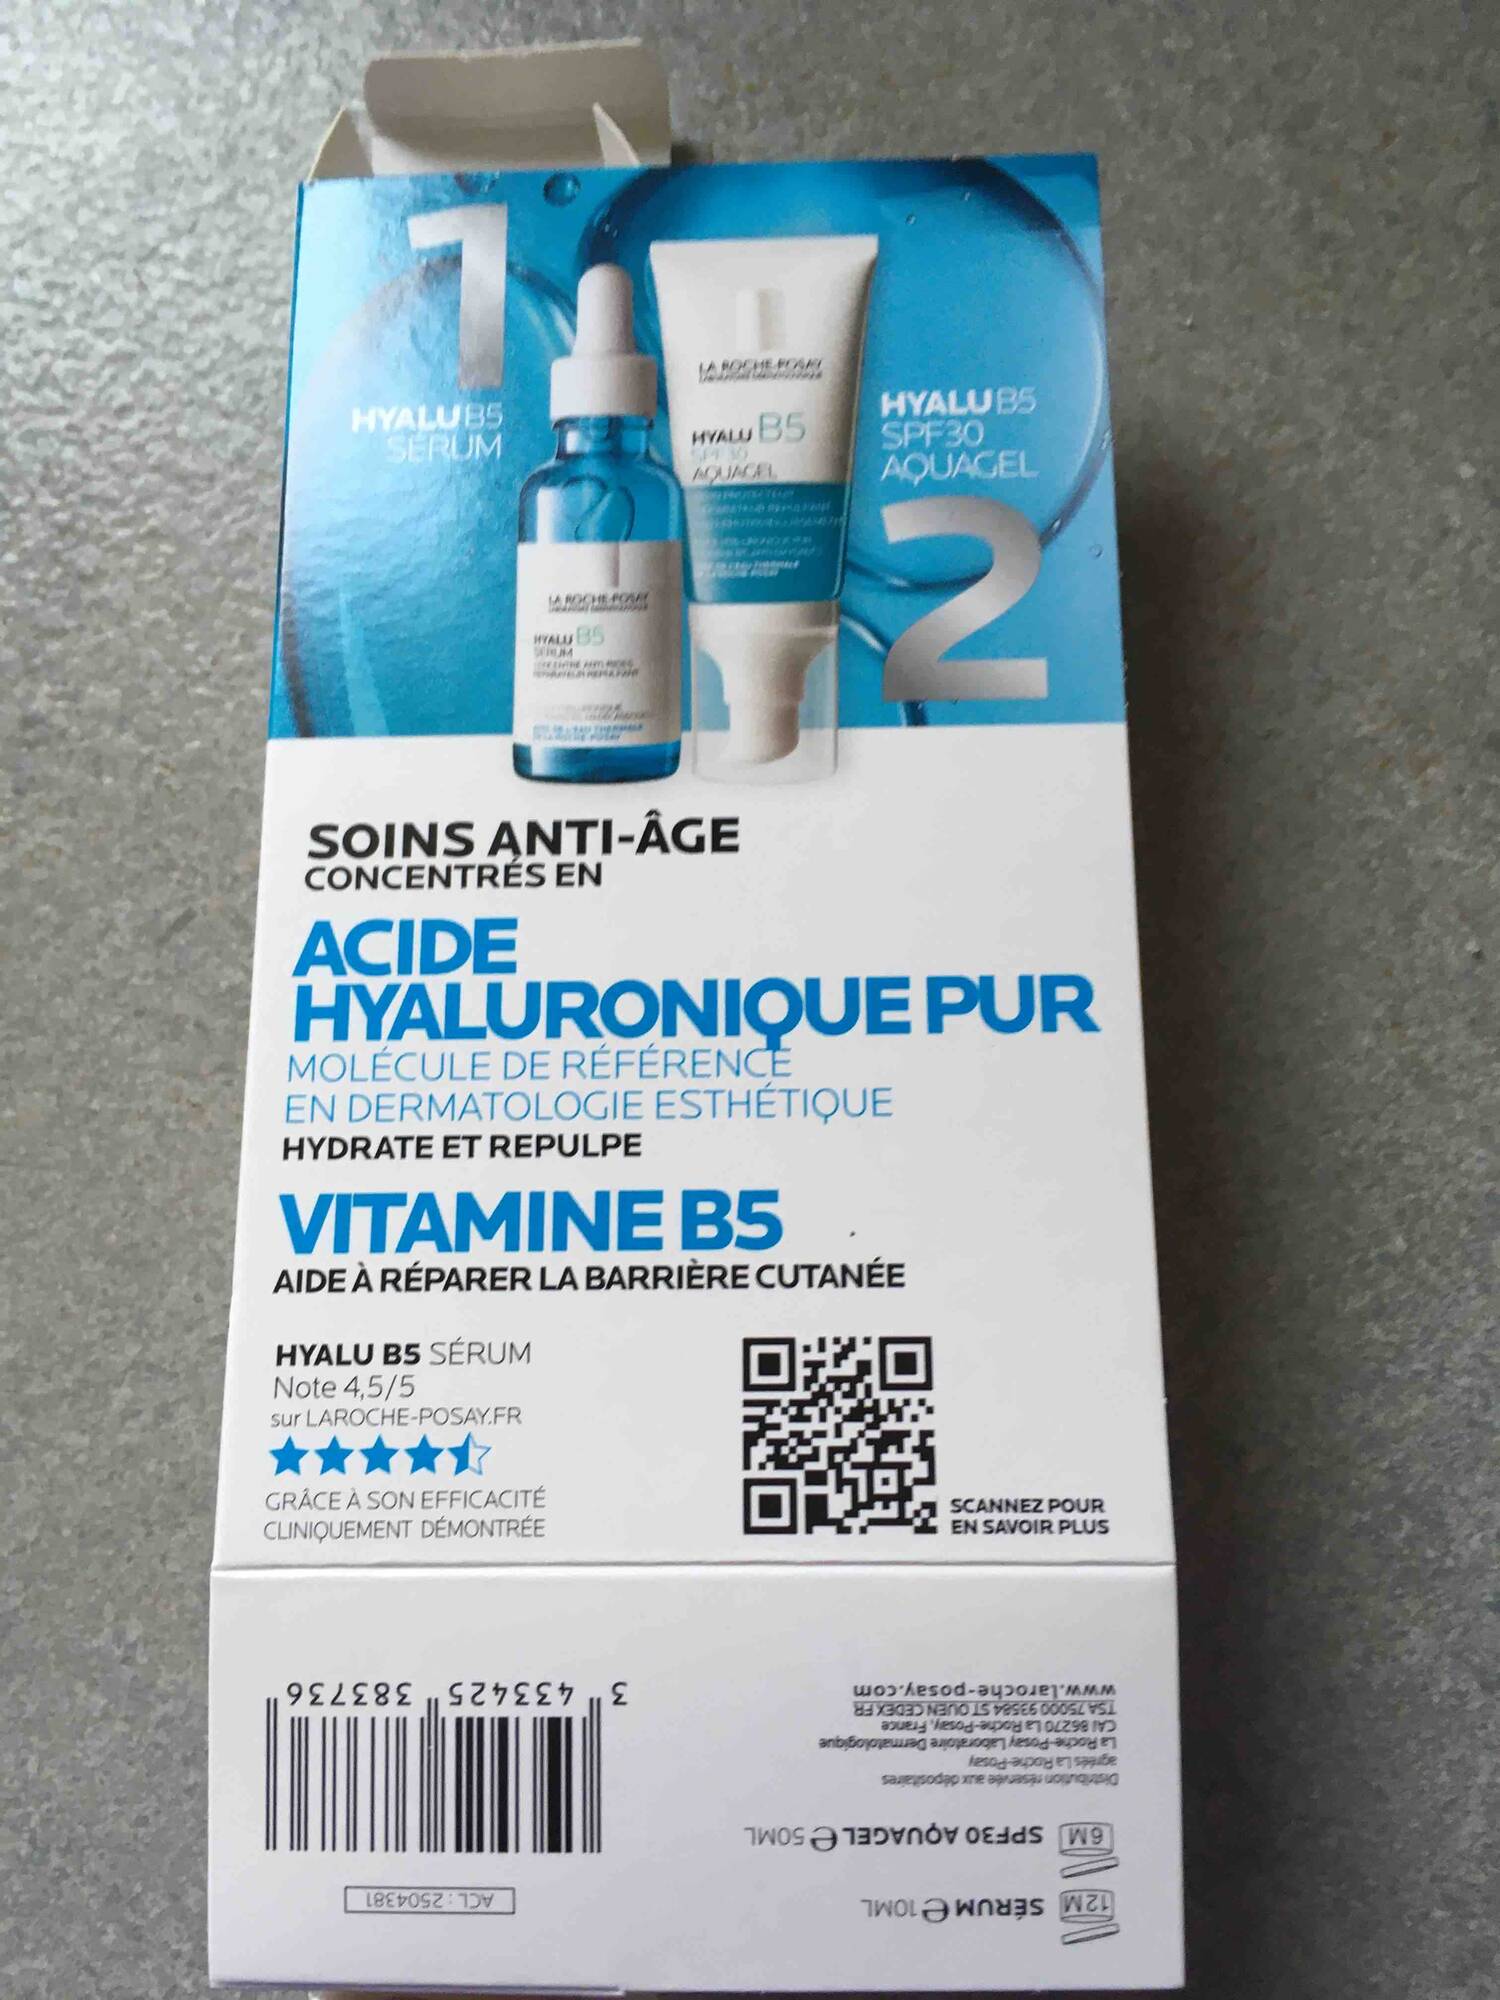 LA ROCHE-POSAY - Soins anti-âge concentrés en acide hyaluronique pur et vitamine B5